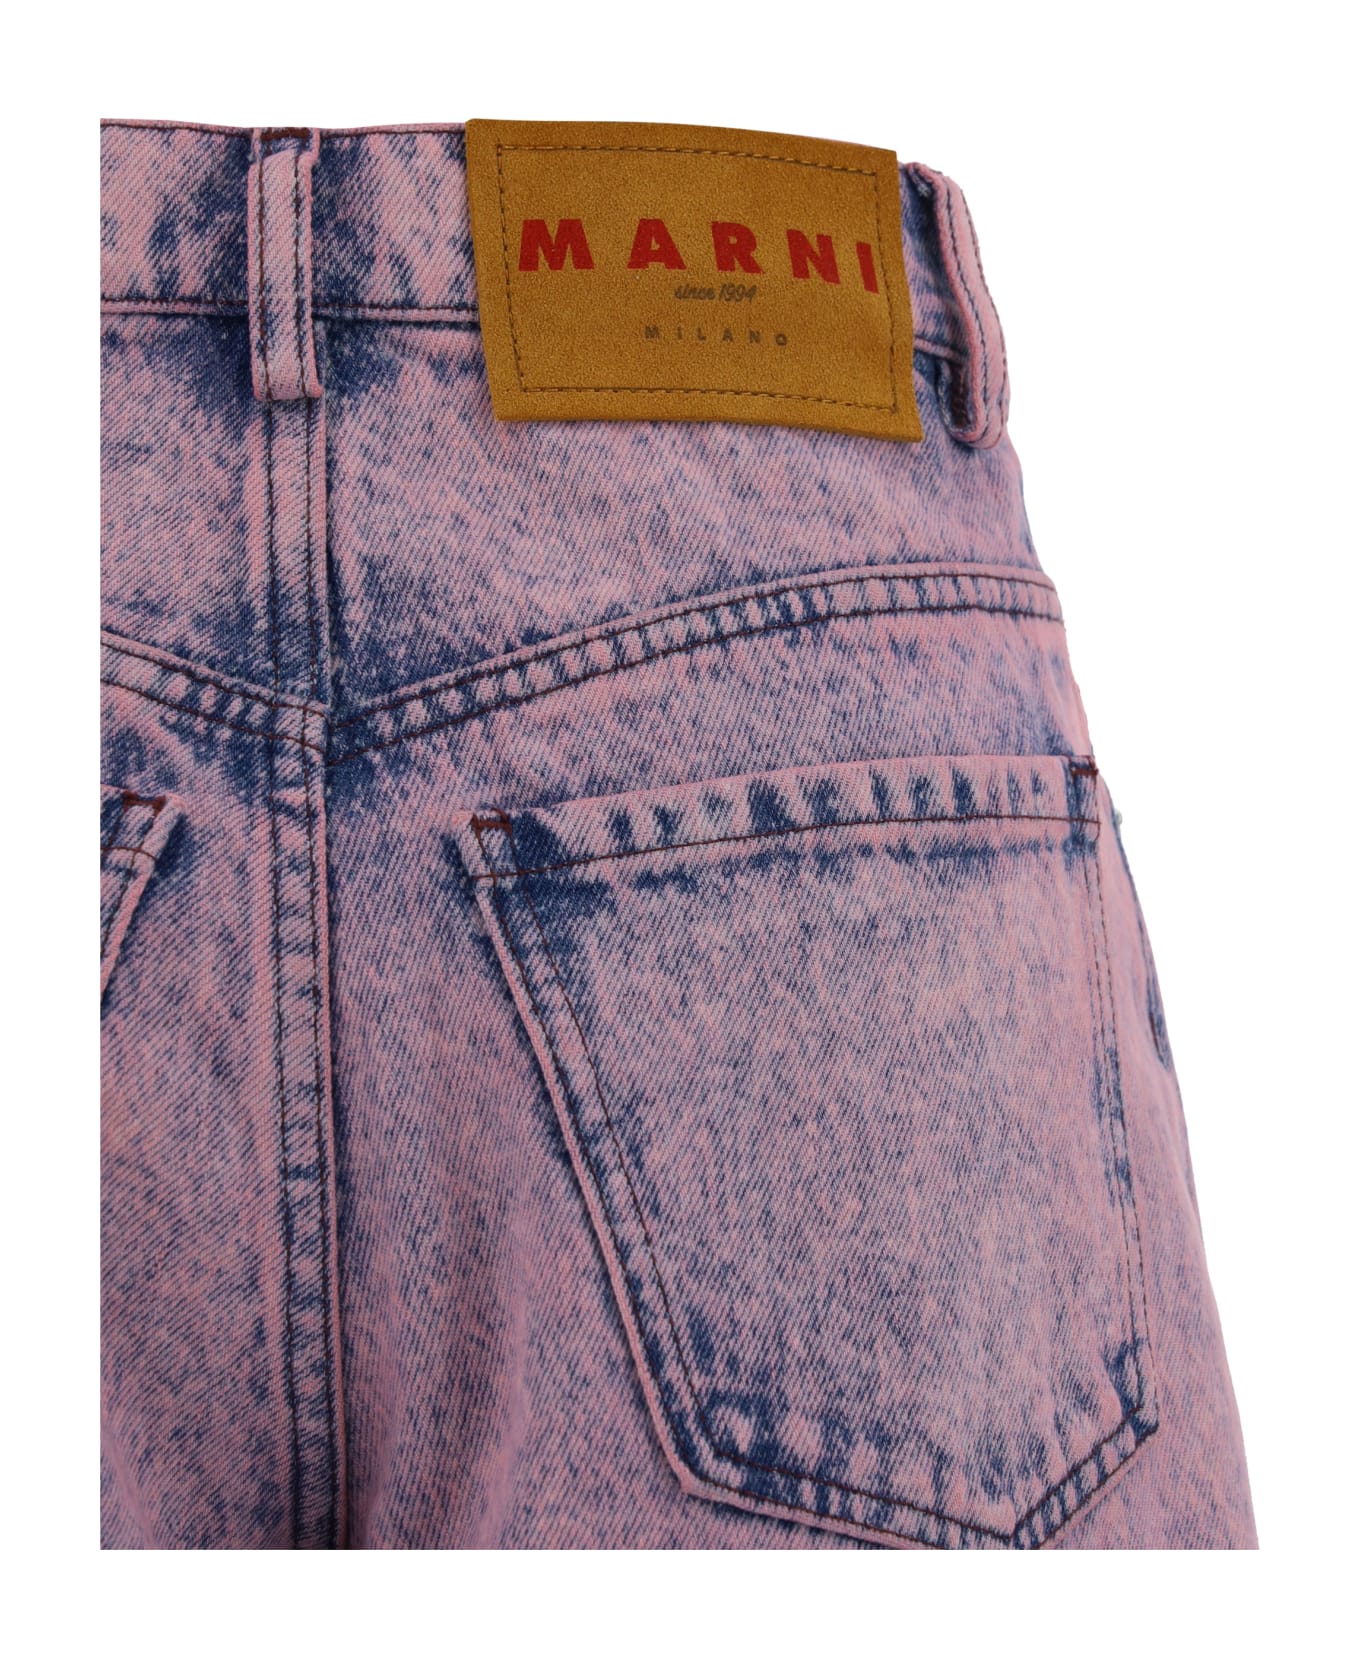 Marni Jeans - PINK デニム